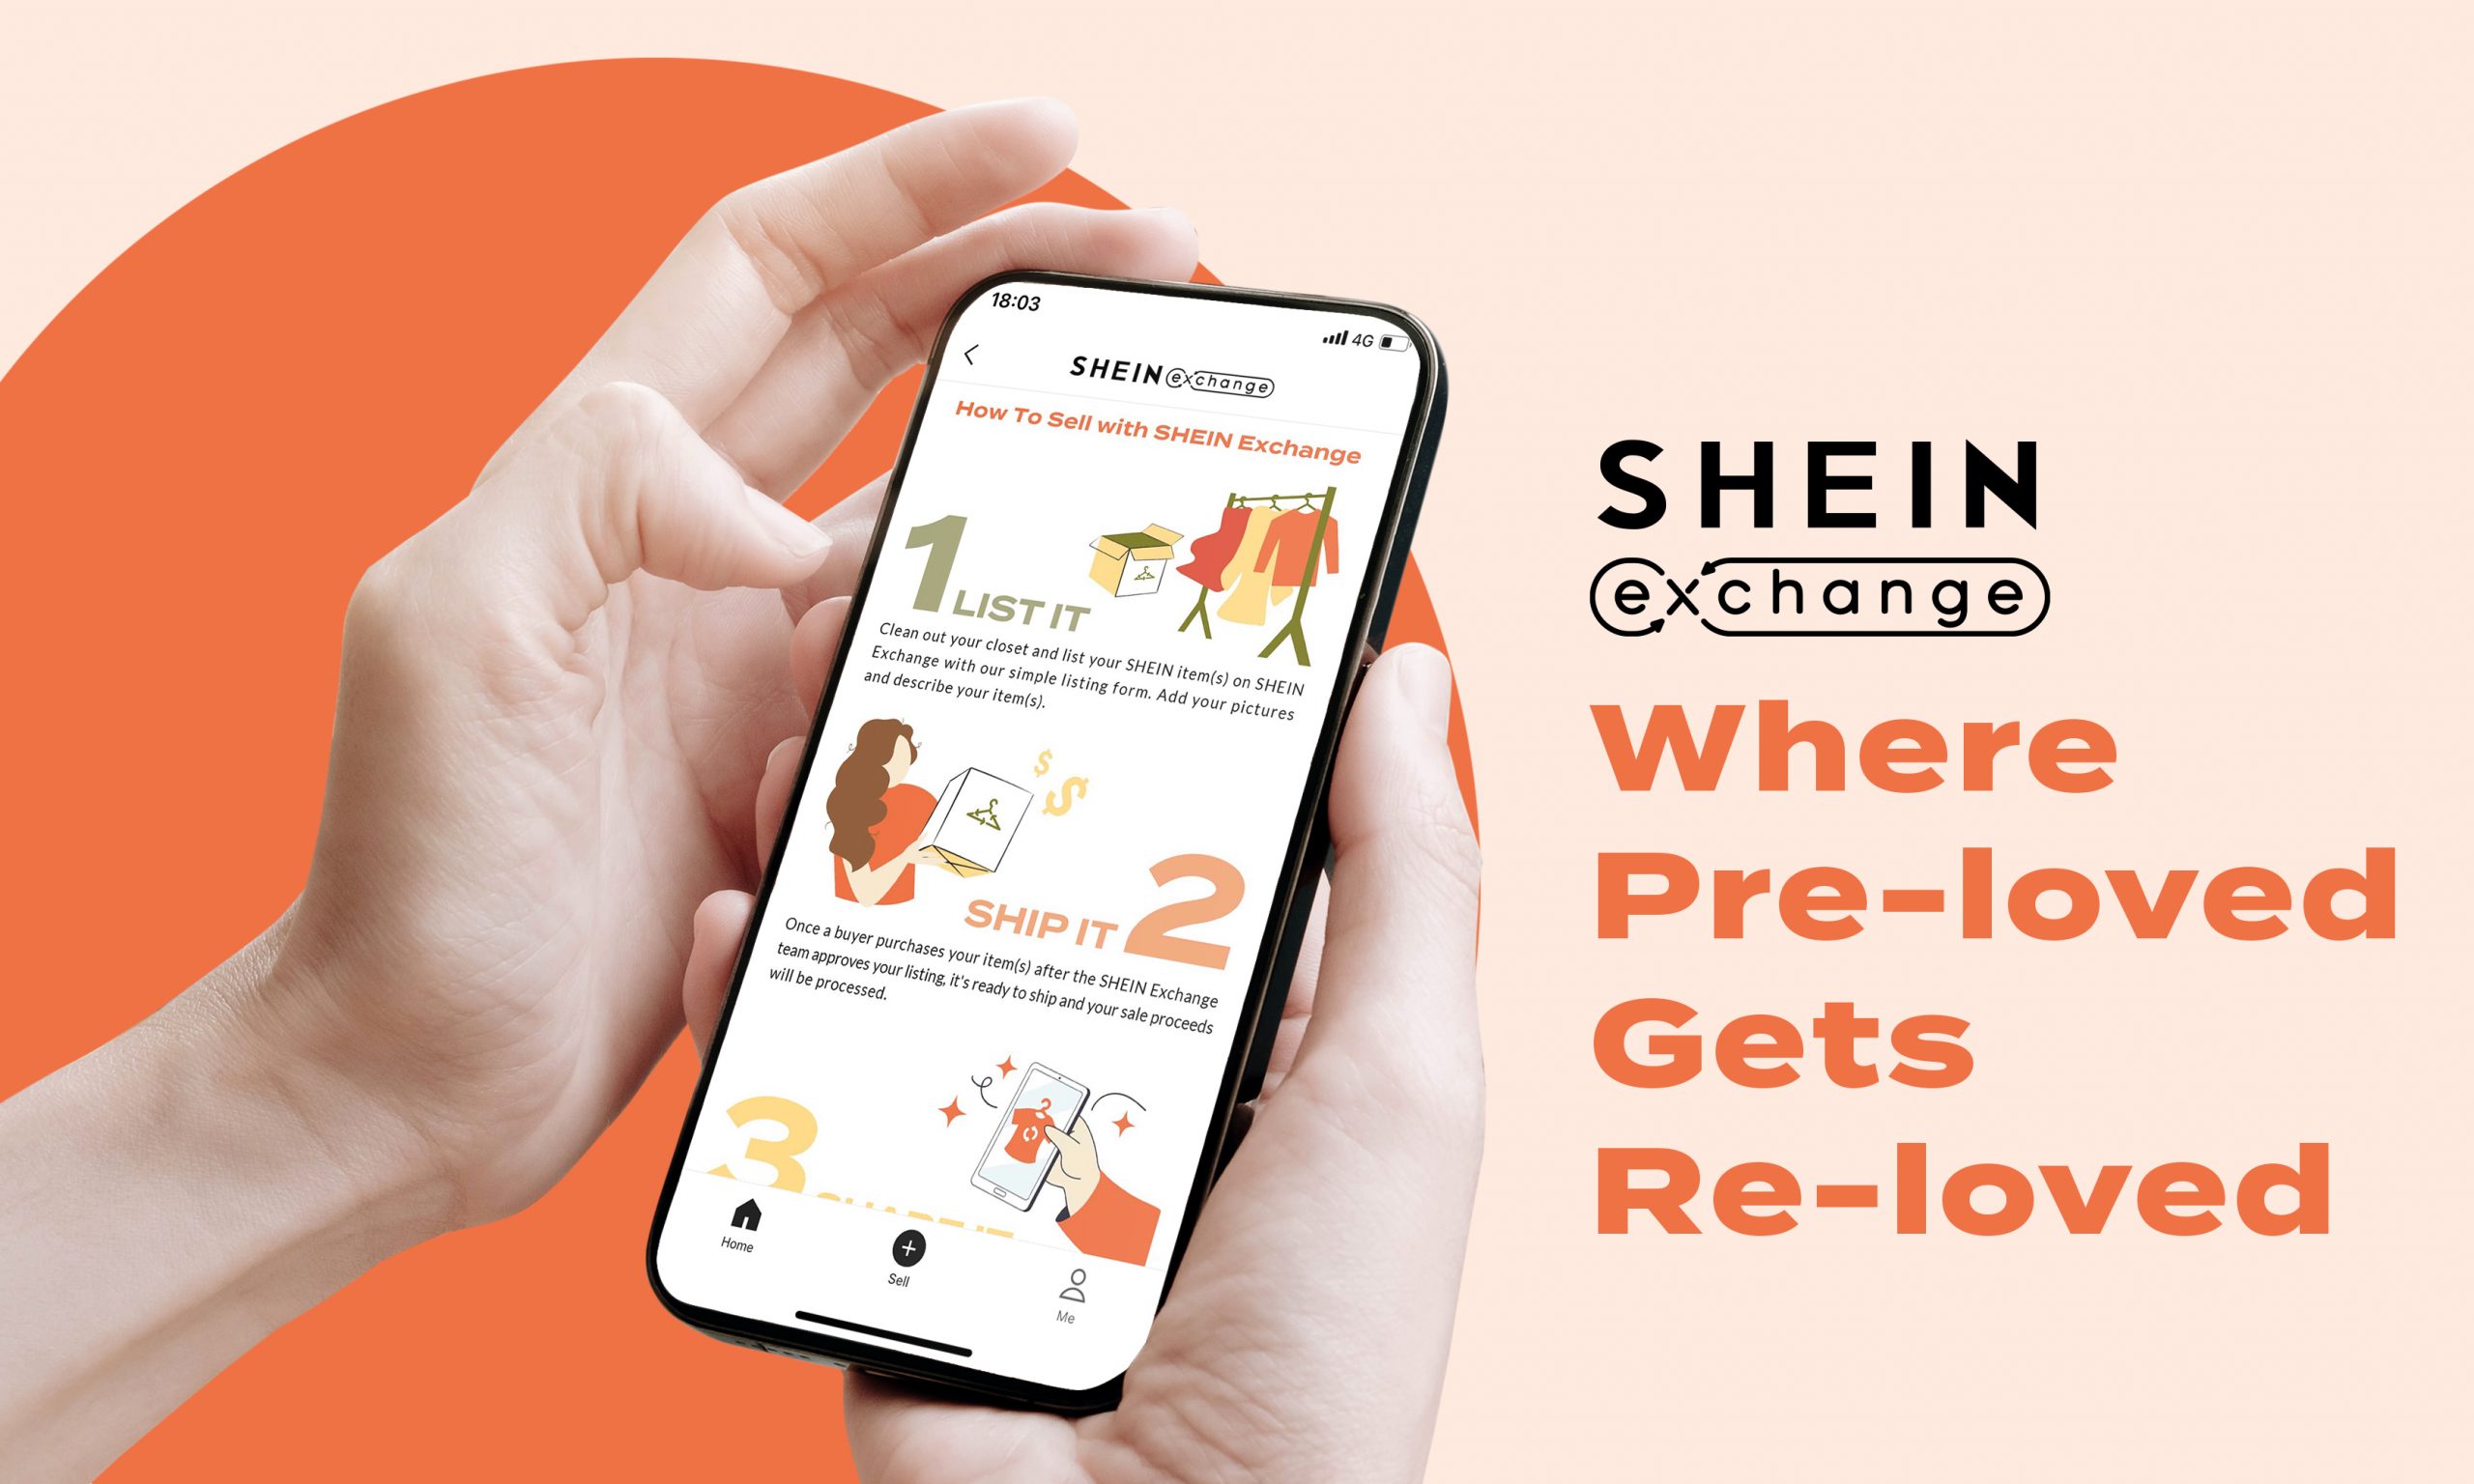 SHEIN Builds New Community Destination Through SHEIN Exchange